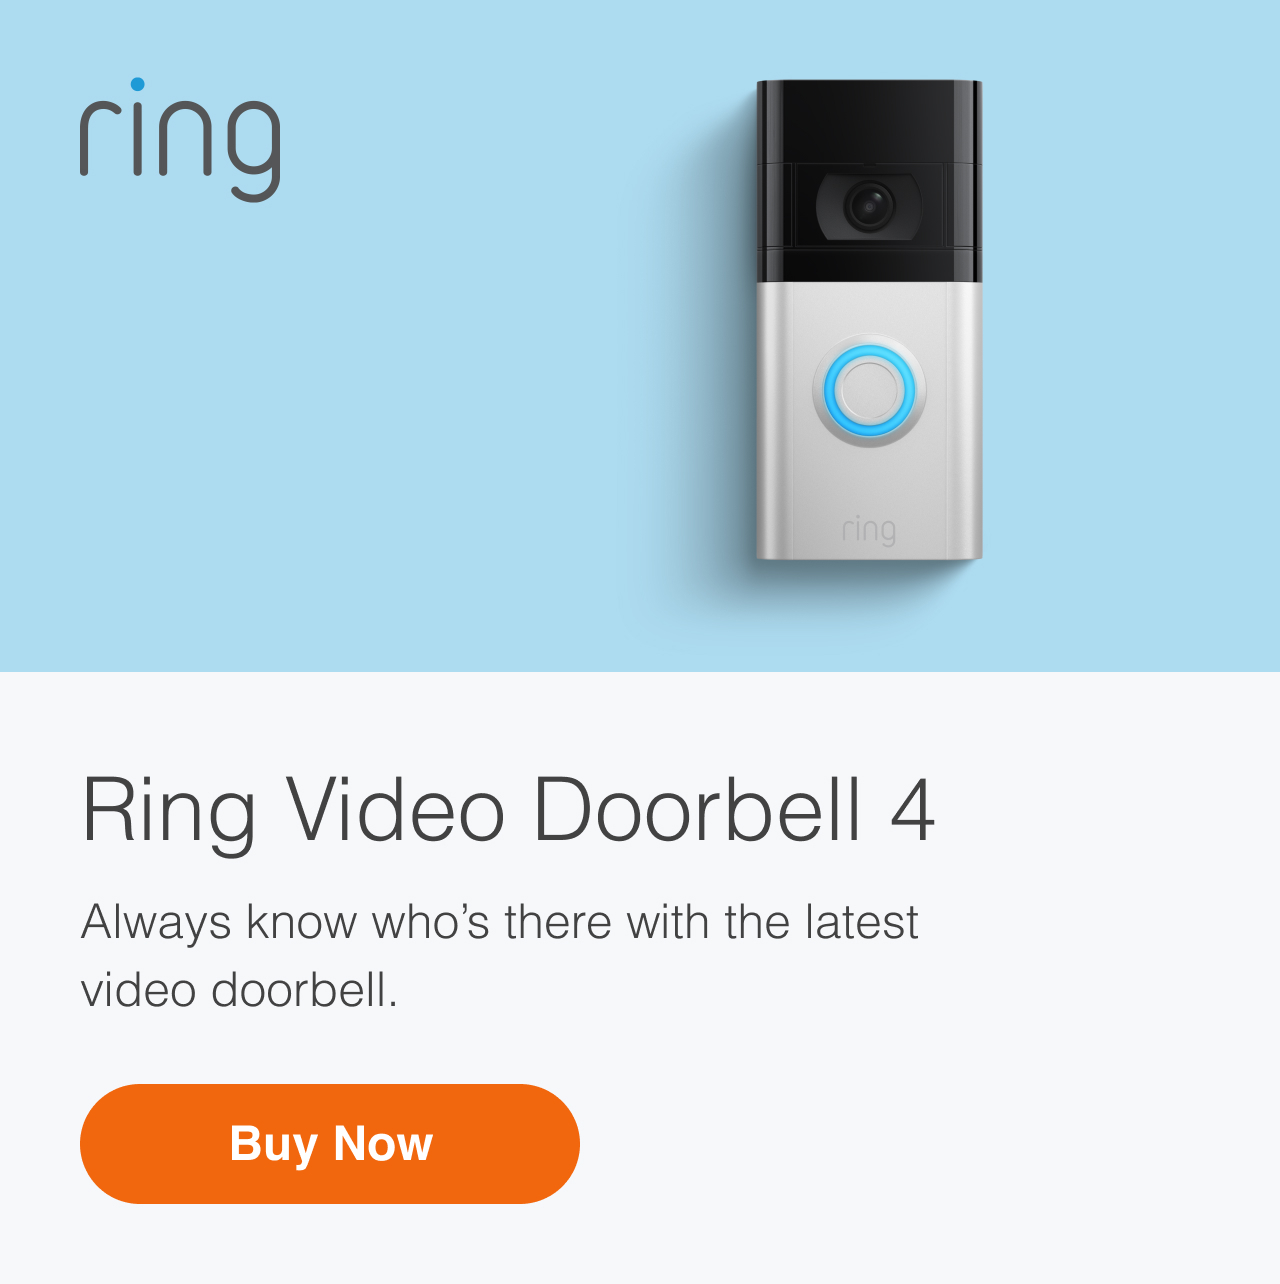 Ring Video Doorbell 4 Information